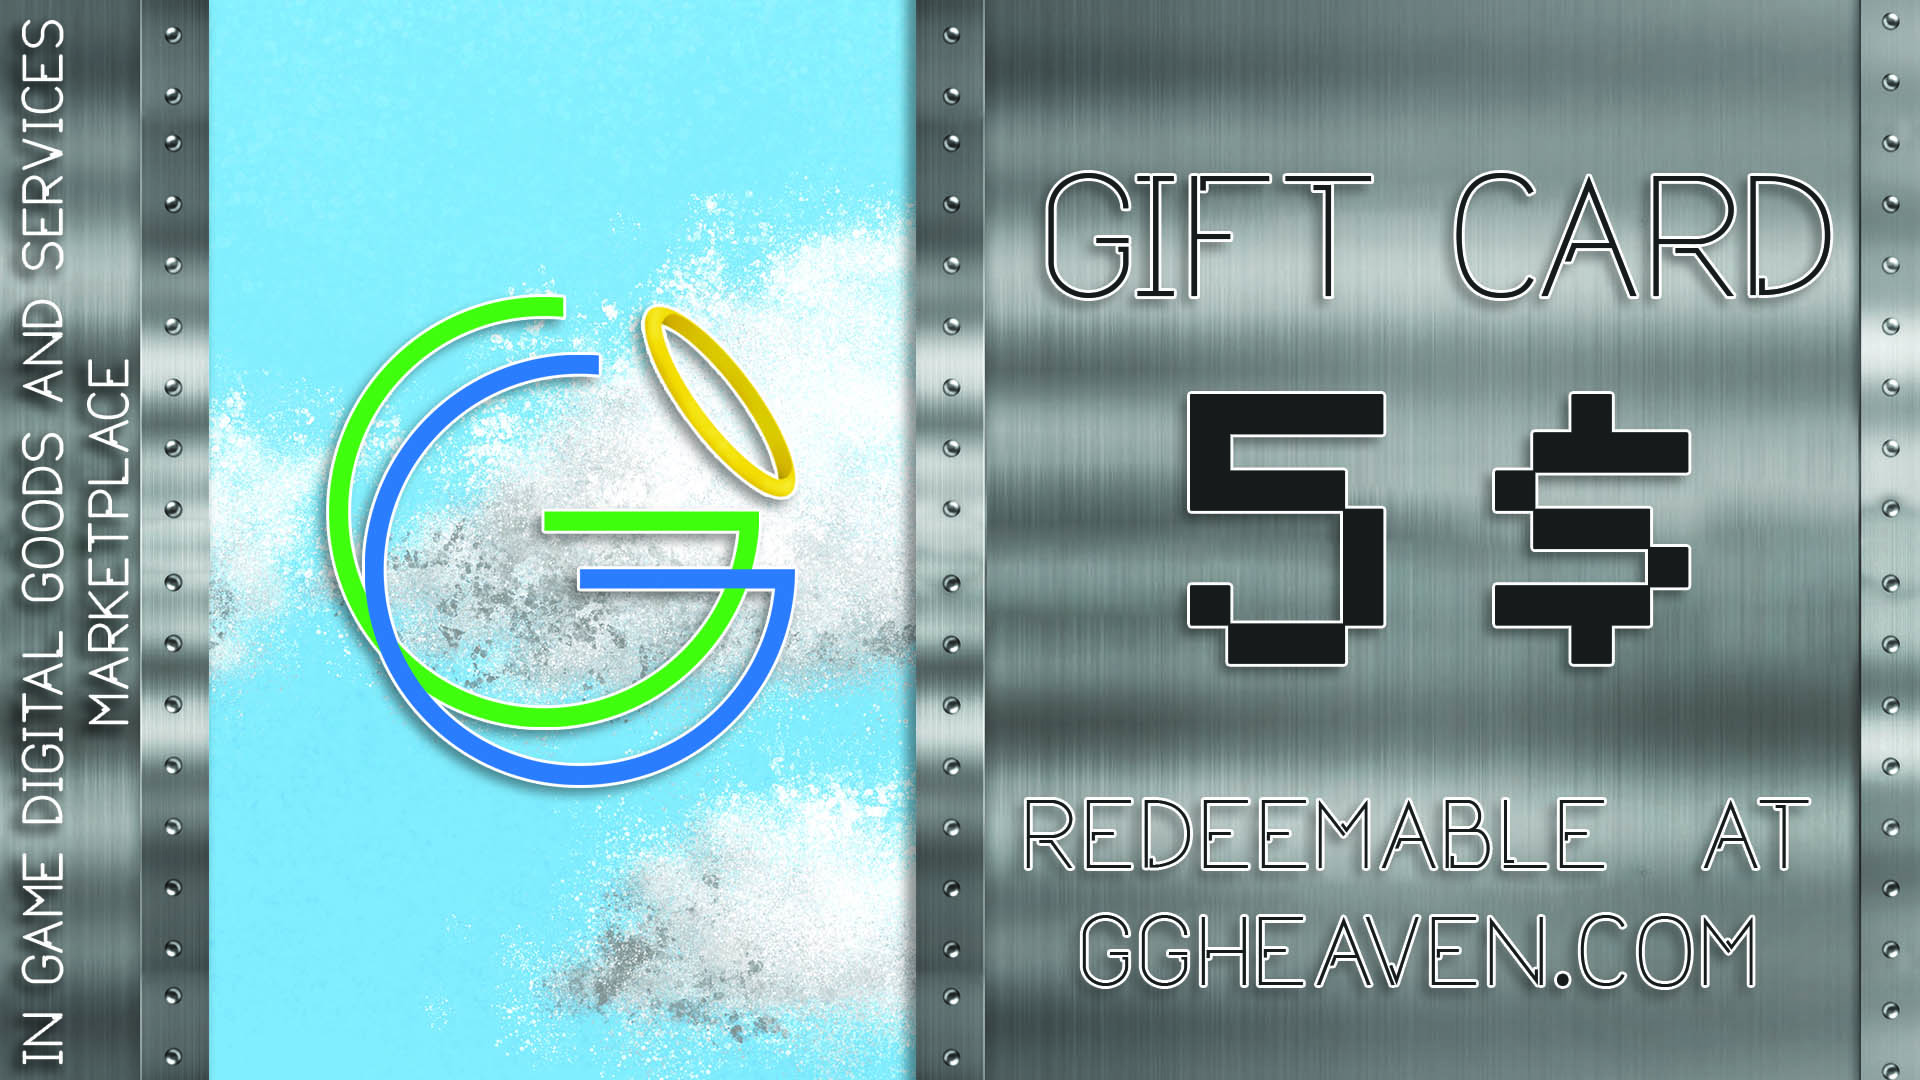 GGHeaven.com 5$ Gift Card